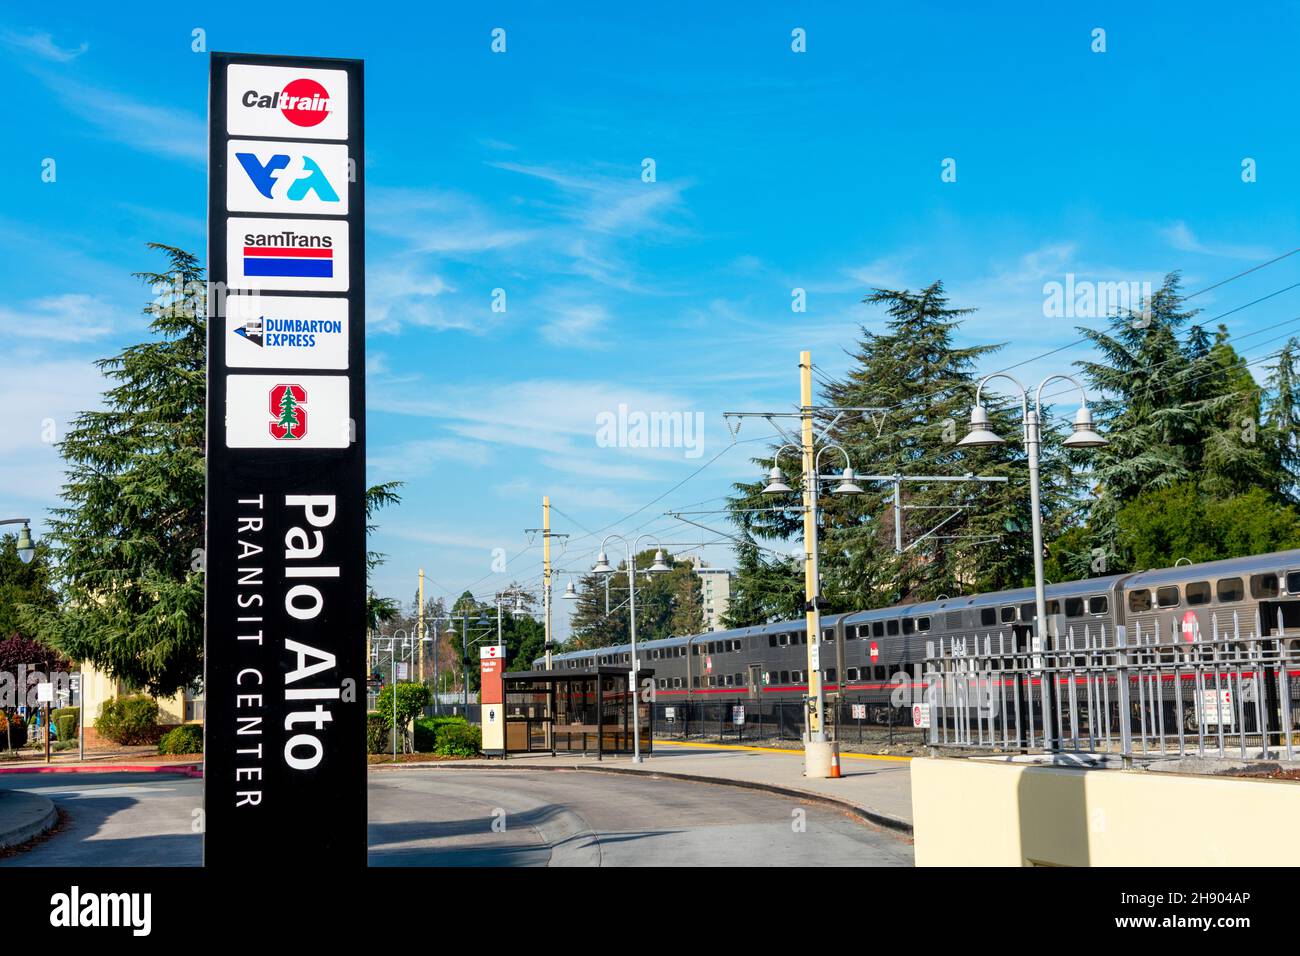 Vue extérieure du centre de transit Palo Alto.Panneau indiquant les noms des services de transport en commun - SamTrans, Caltrain, VTA, Dumbarton Express Banque D'Images